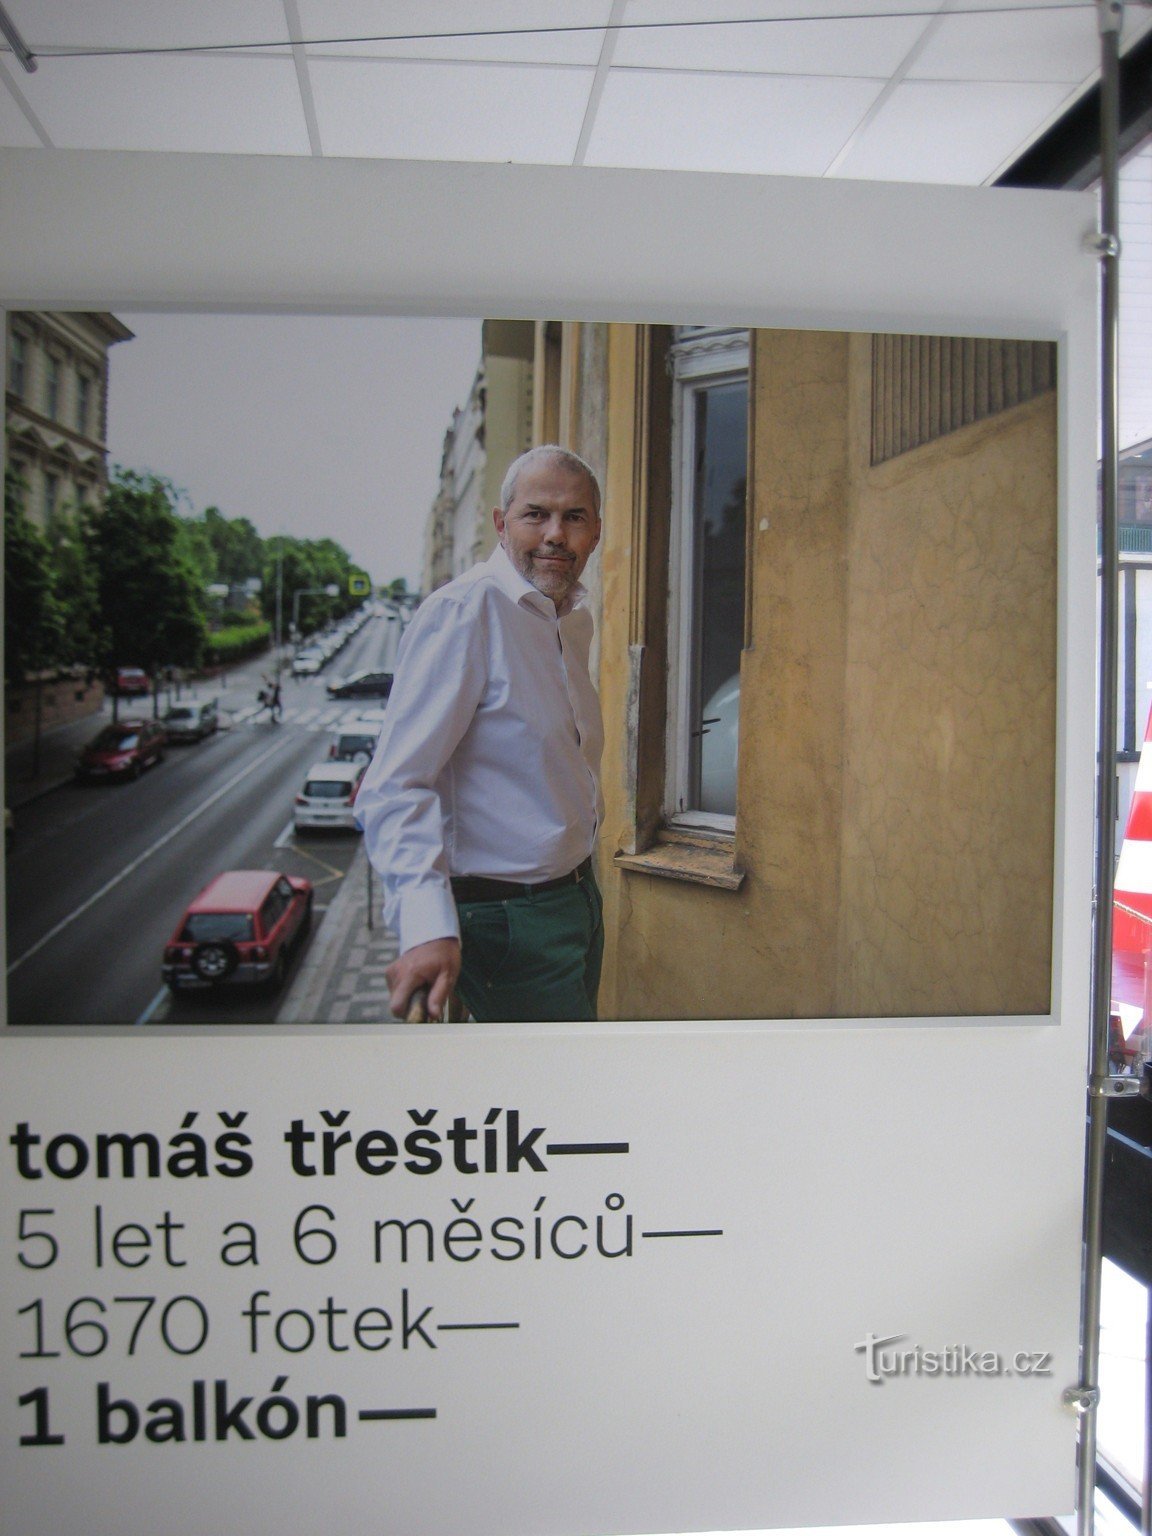 Tomáš Třeštík – 5 år och 6 månader, 1670 bilder och 1 balkong - Karlovy Vary